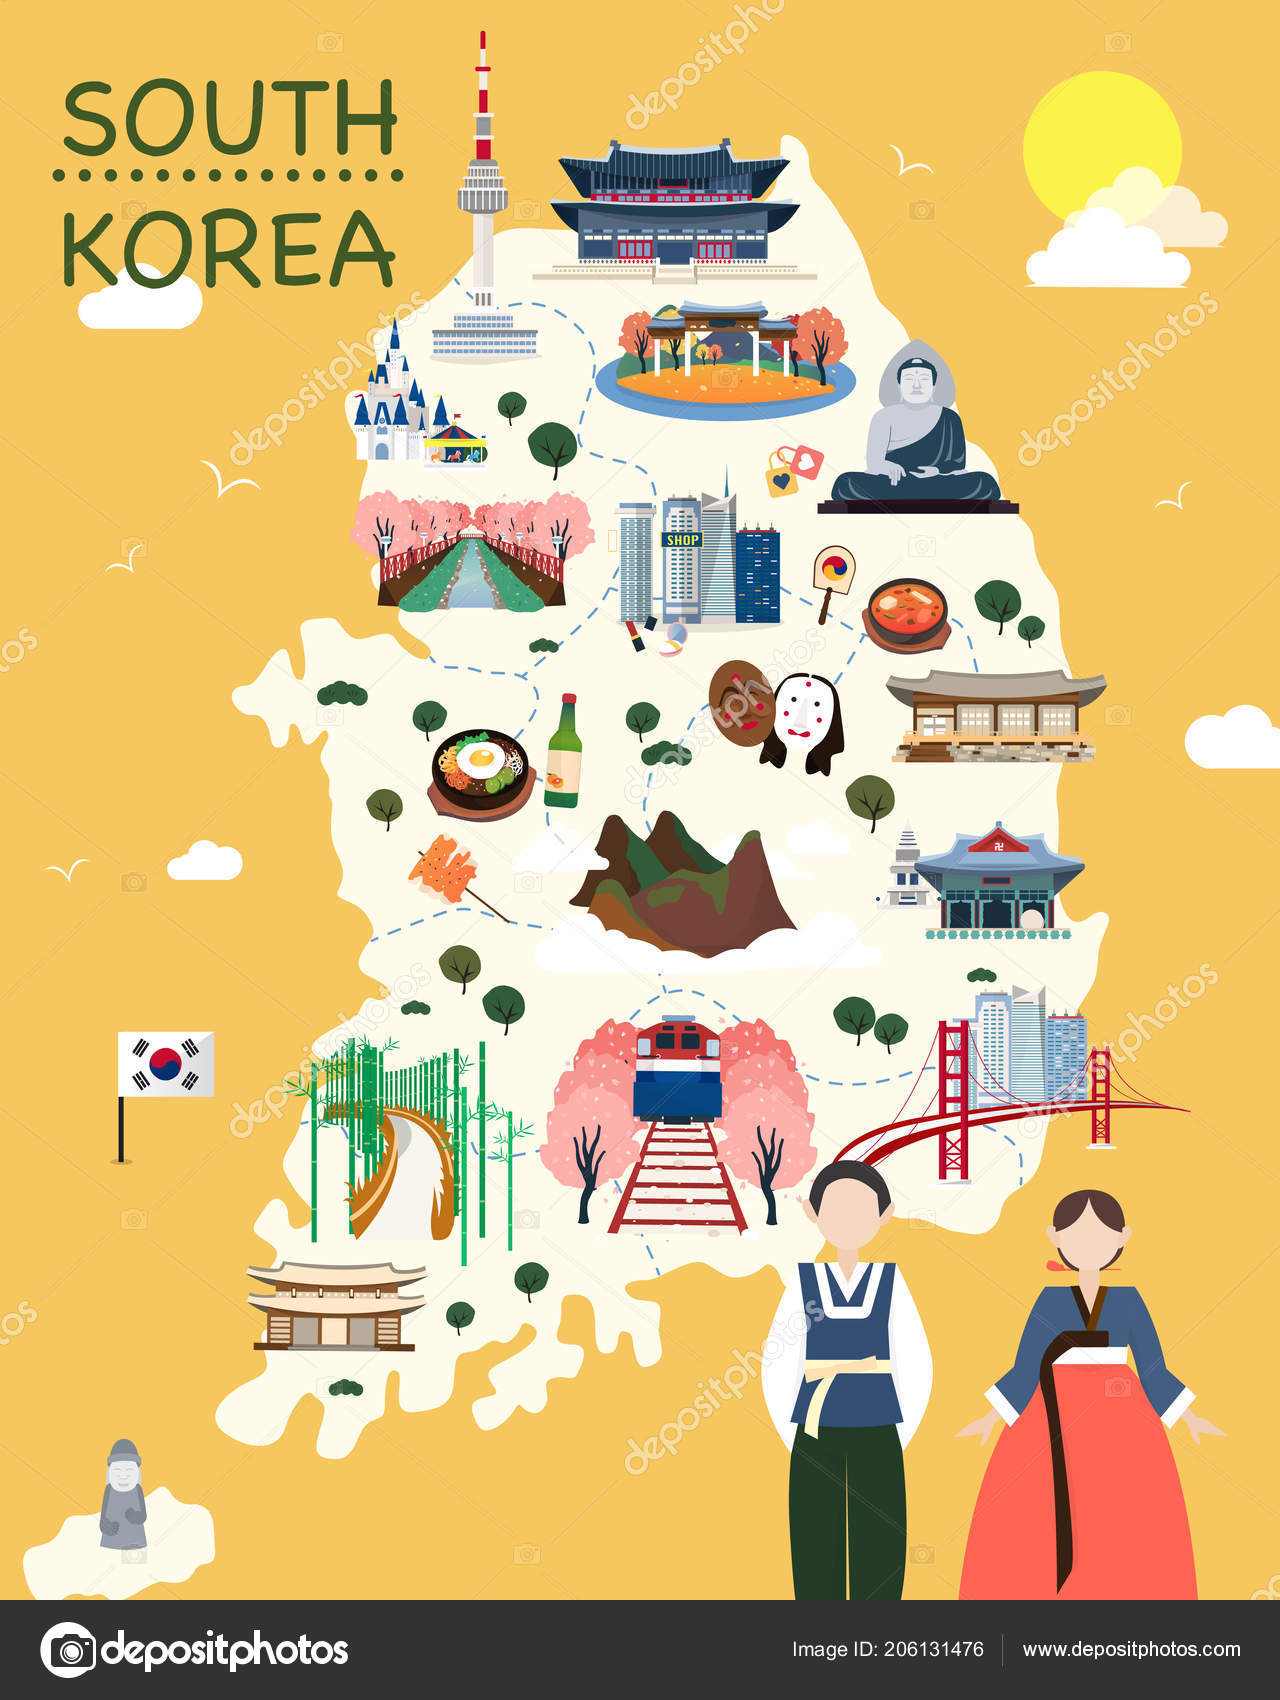 かわいいディズニー画像 50 素晴らしいかわいい 韓国 地図 イラスト